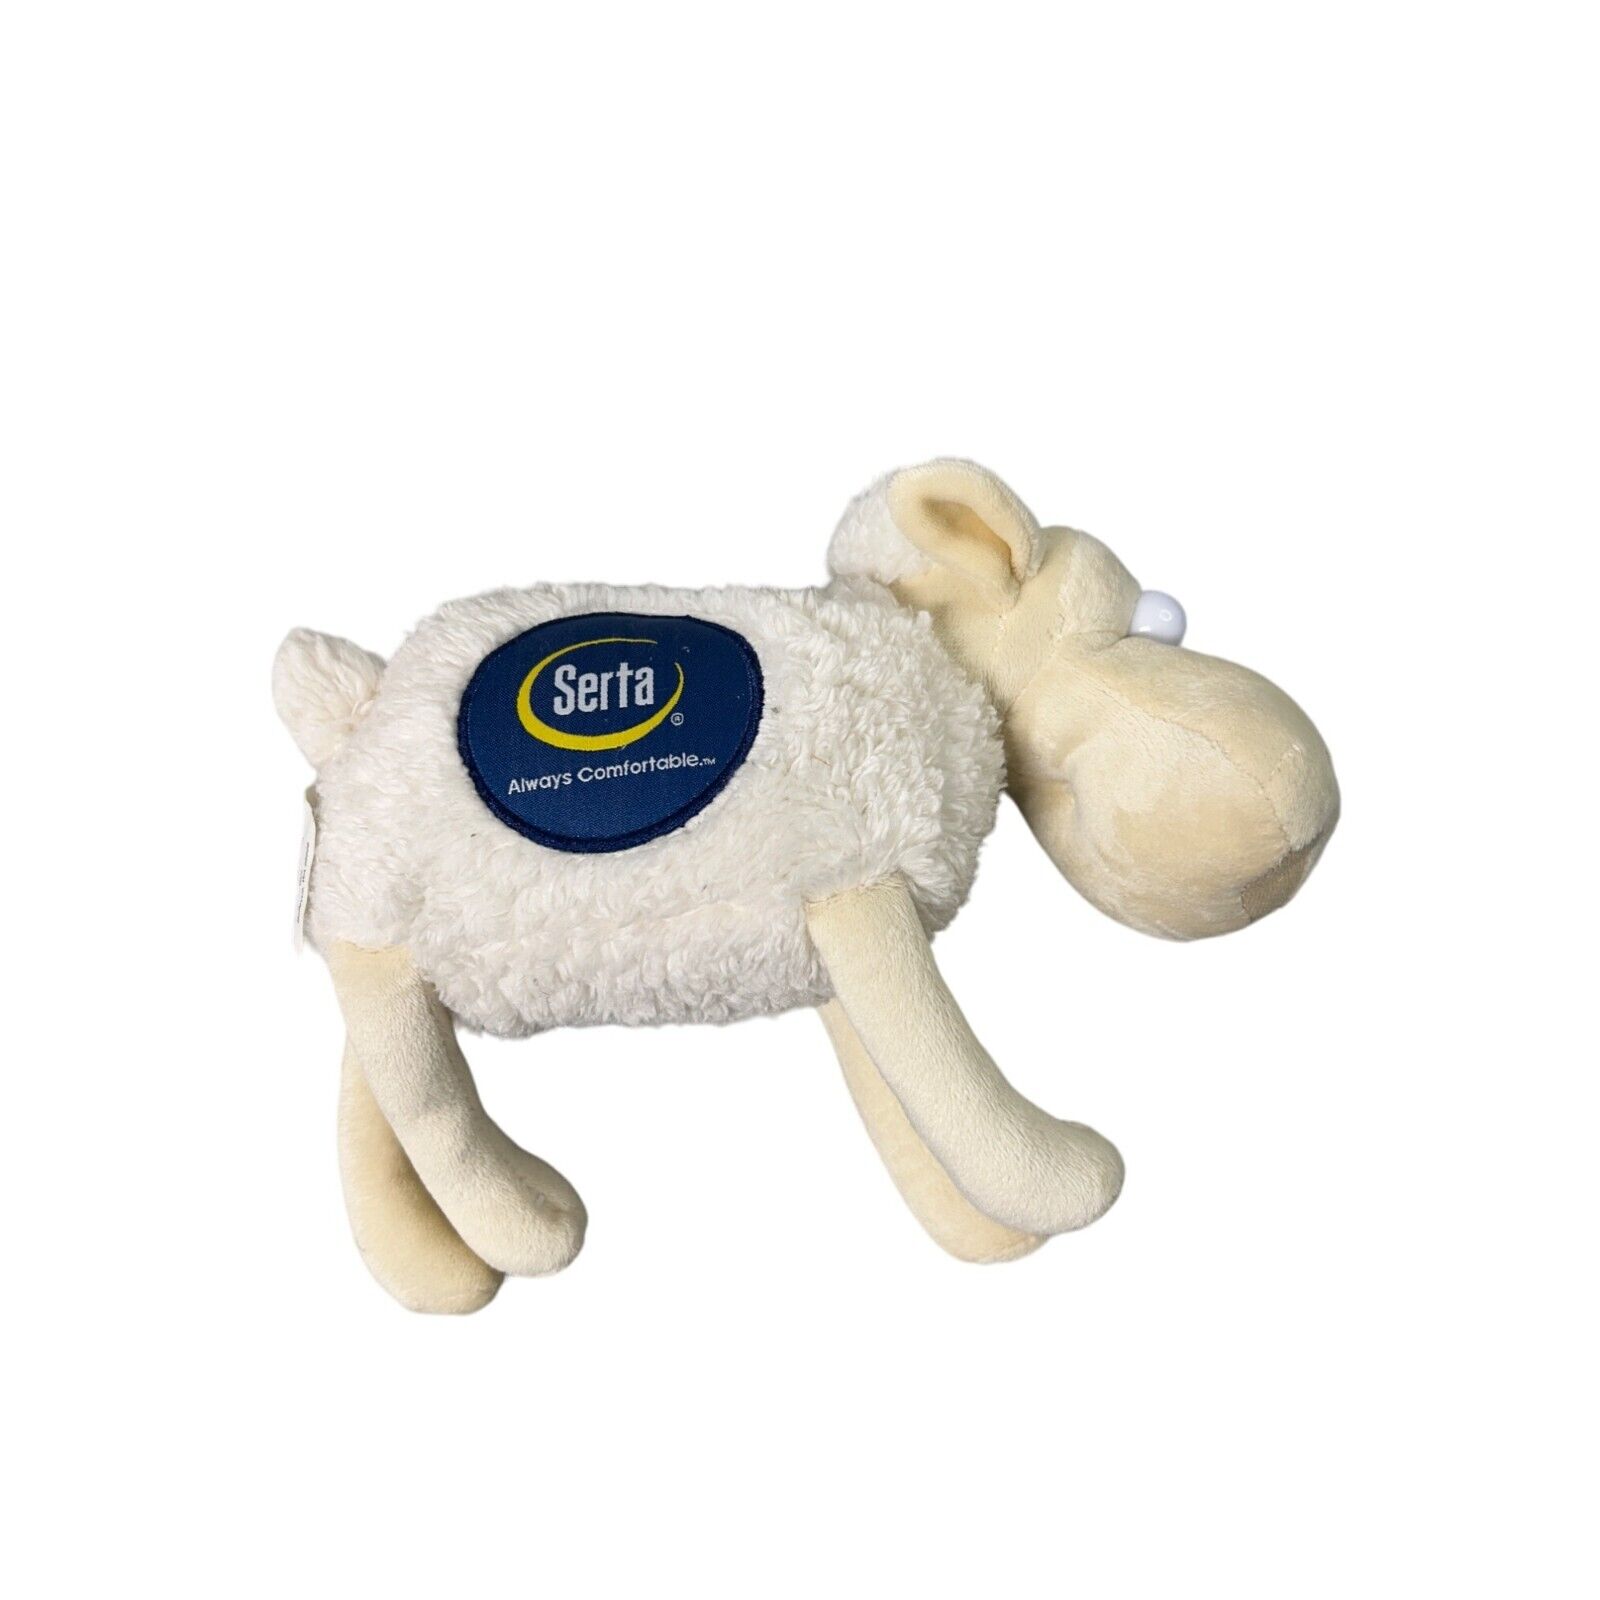 Serta Sheep #1 Mattress Company Promo Plush Stuffed Animal 2017 Toy 1 Blue eyes